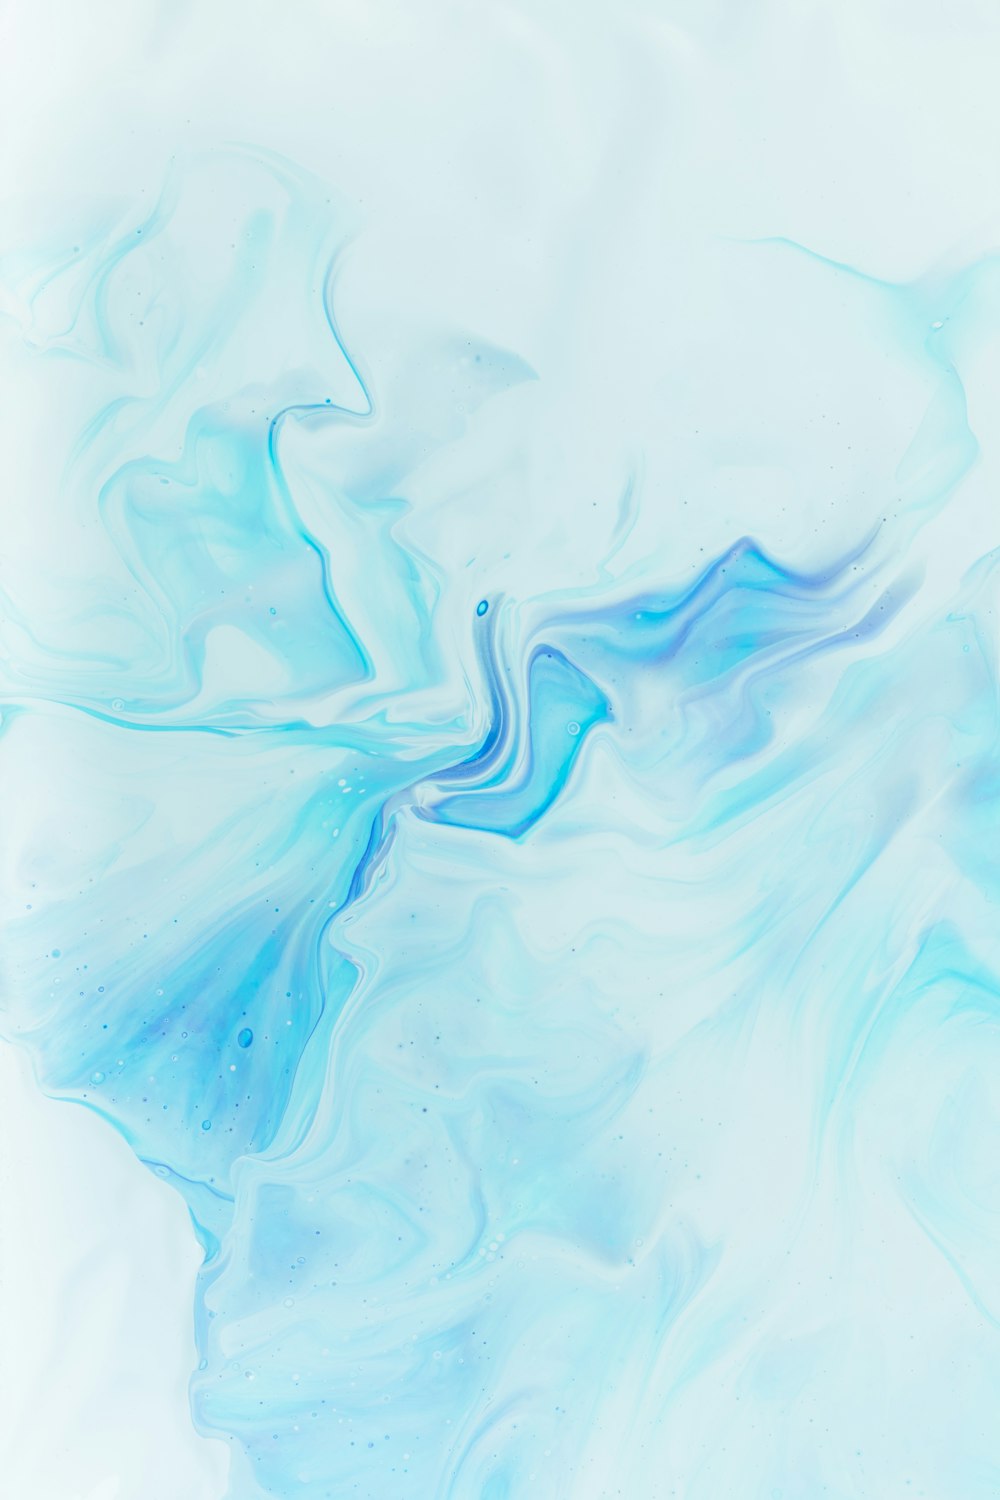 Imágenes de Marmol Azul | Descarga imágenes gratuitas en Unsplash